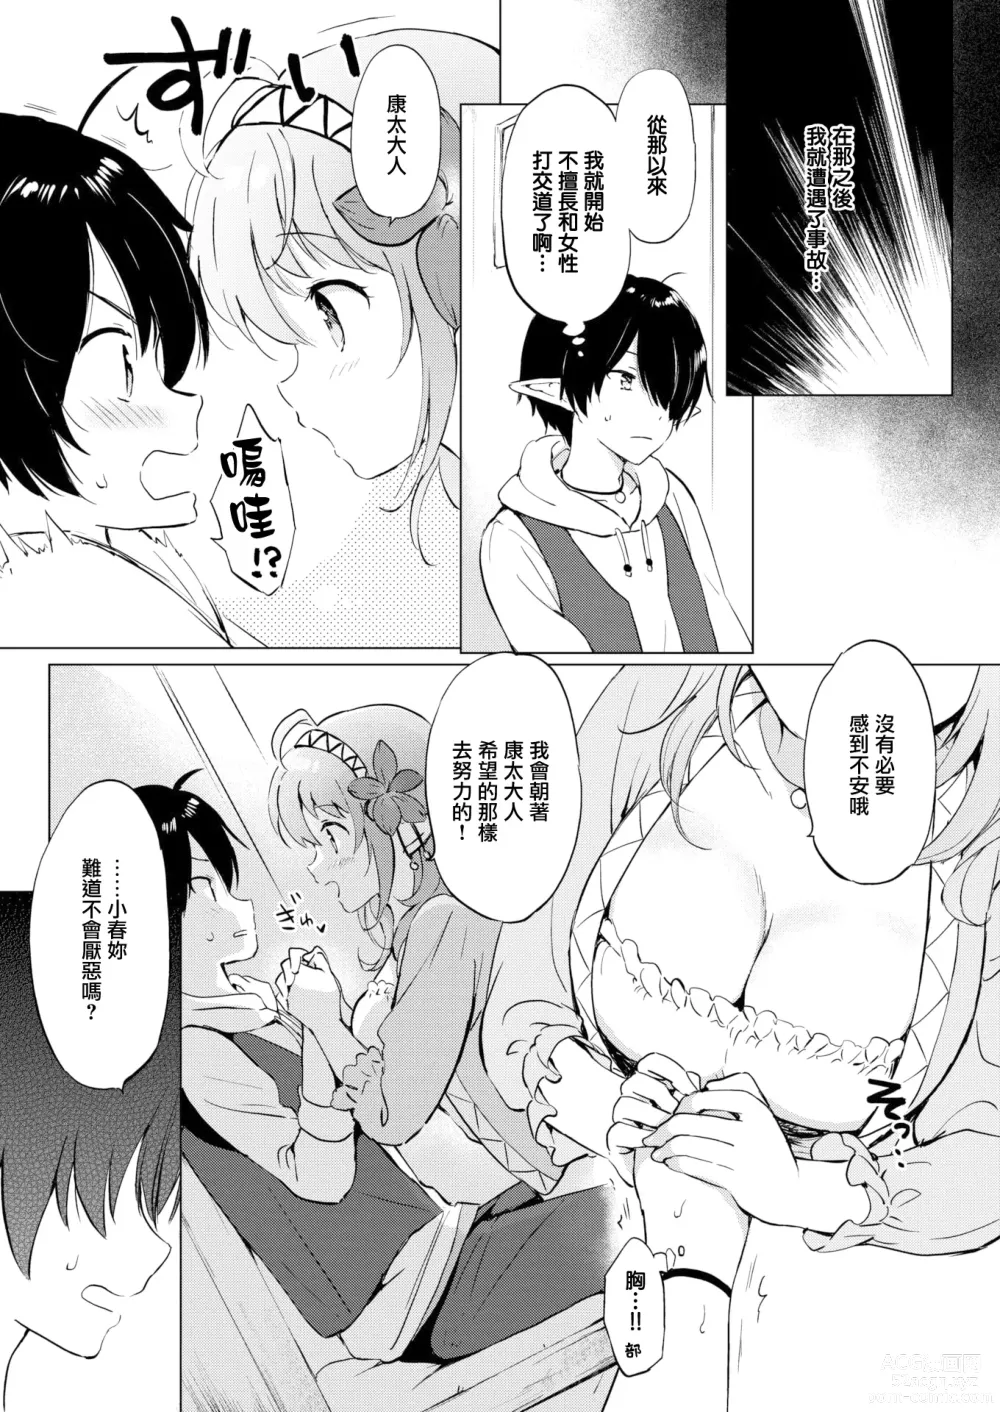 Page 11 of manga Mitsugetsu Paradise - Honeymoon Paradise (decensored)